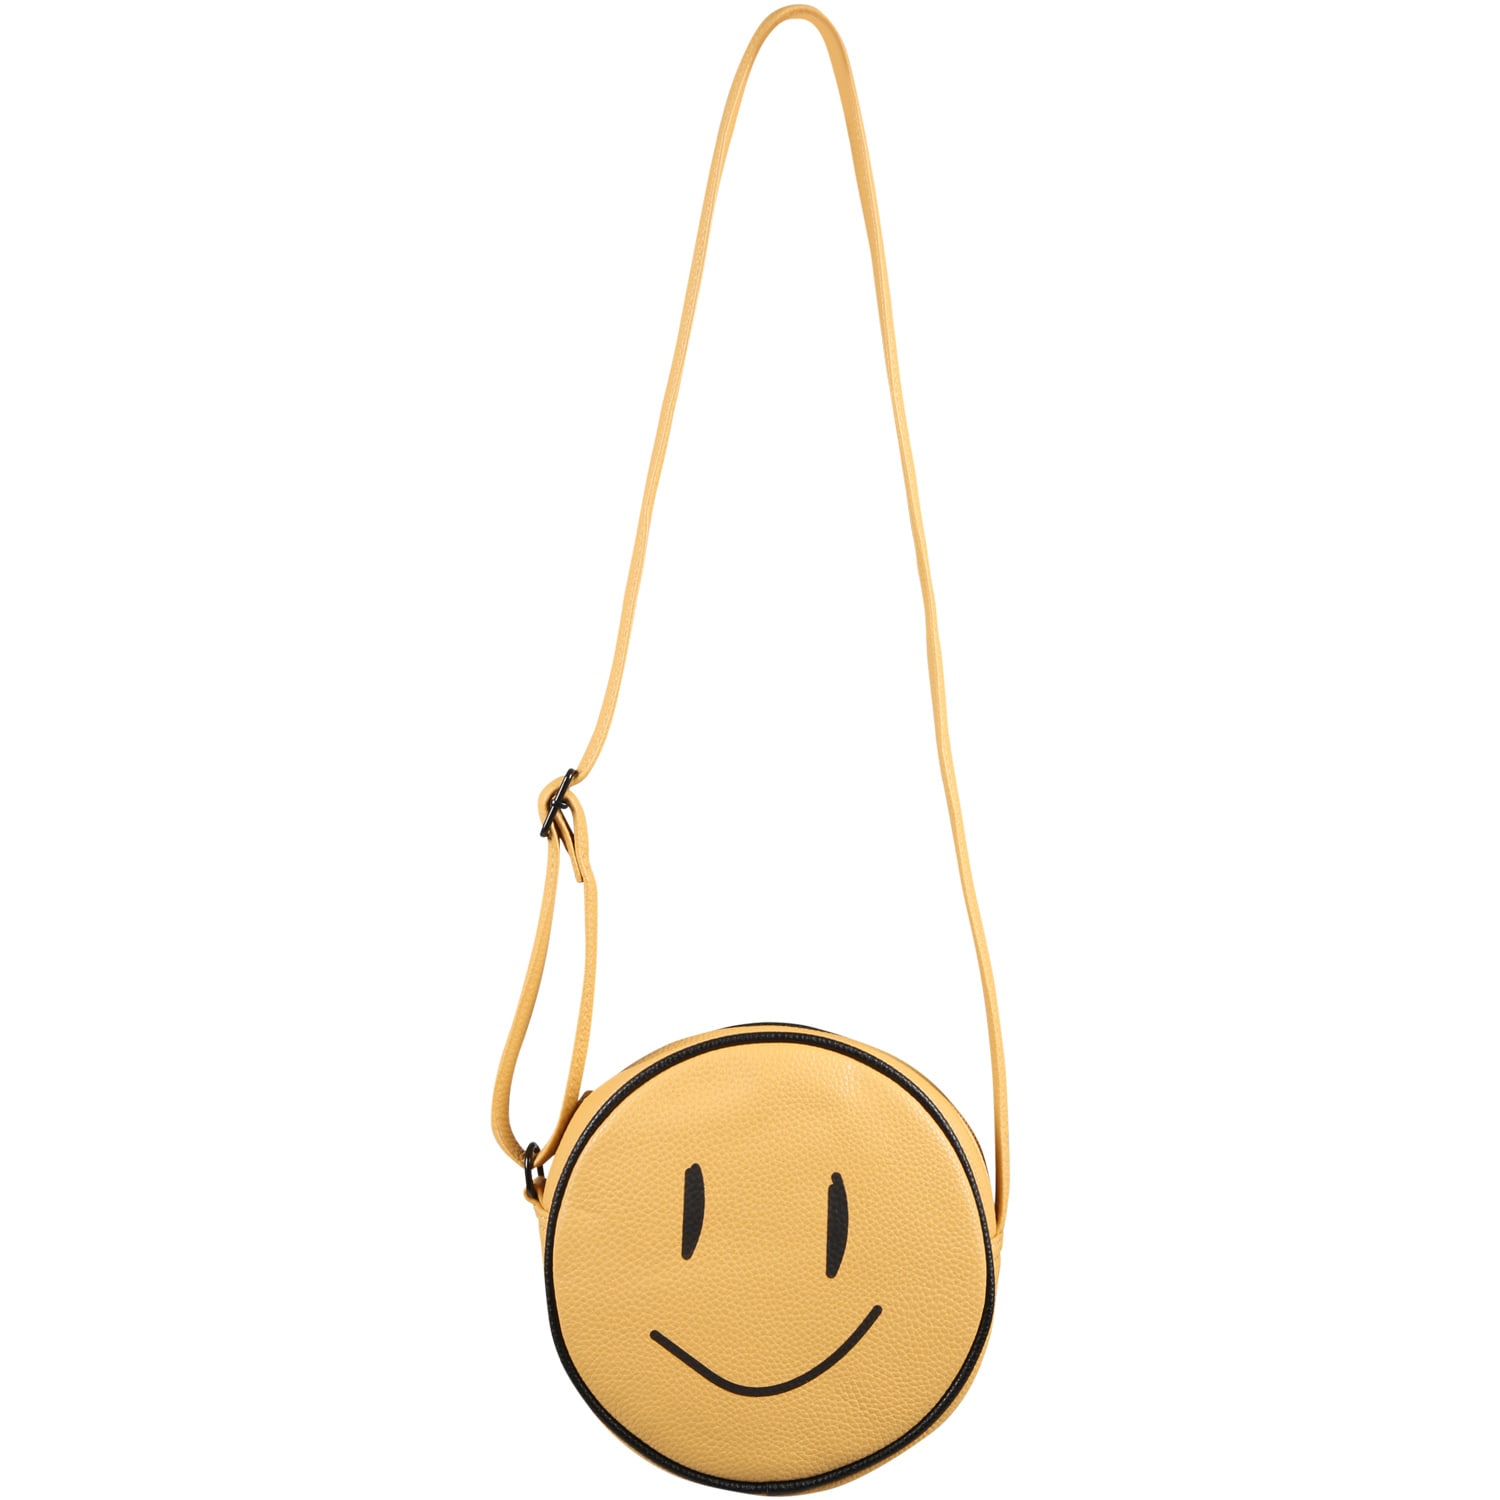 Molo Yellow Bag For Girl With Smile